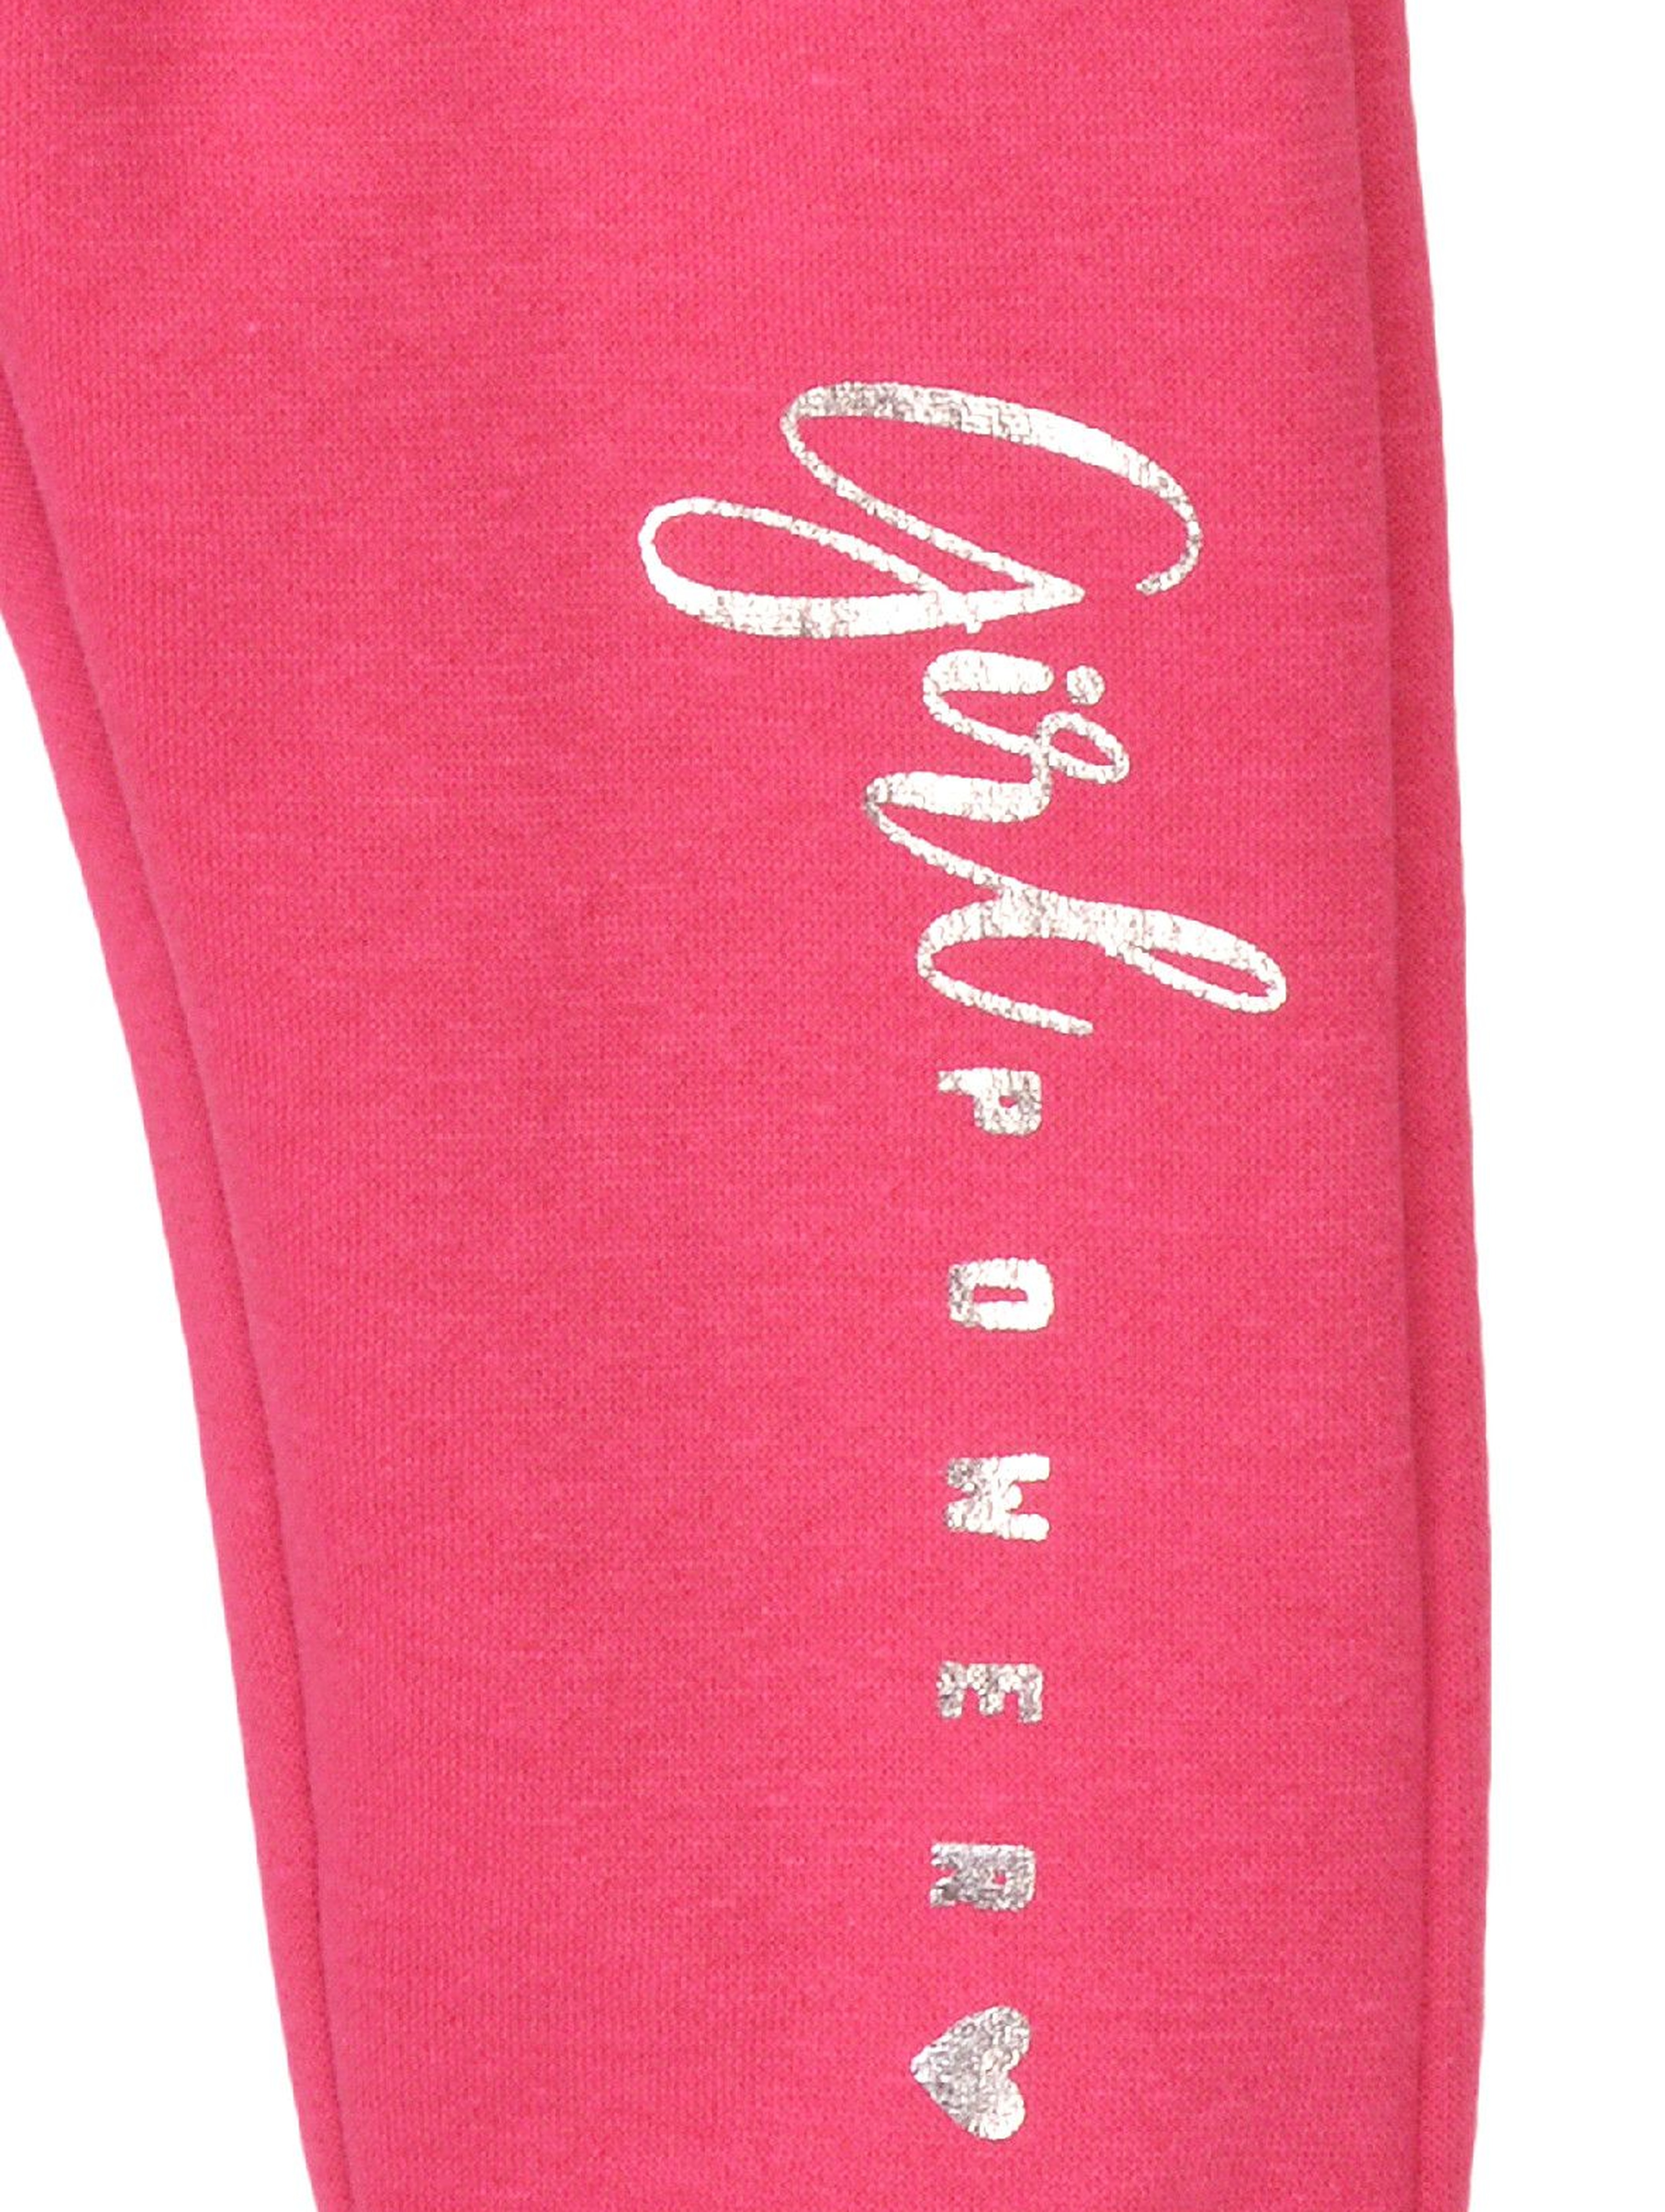 Spodnie dresowe dziewczęce różowe